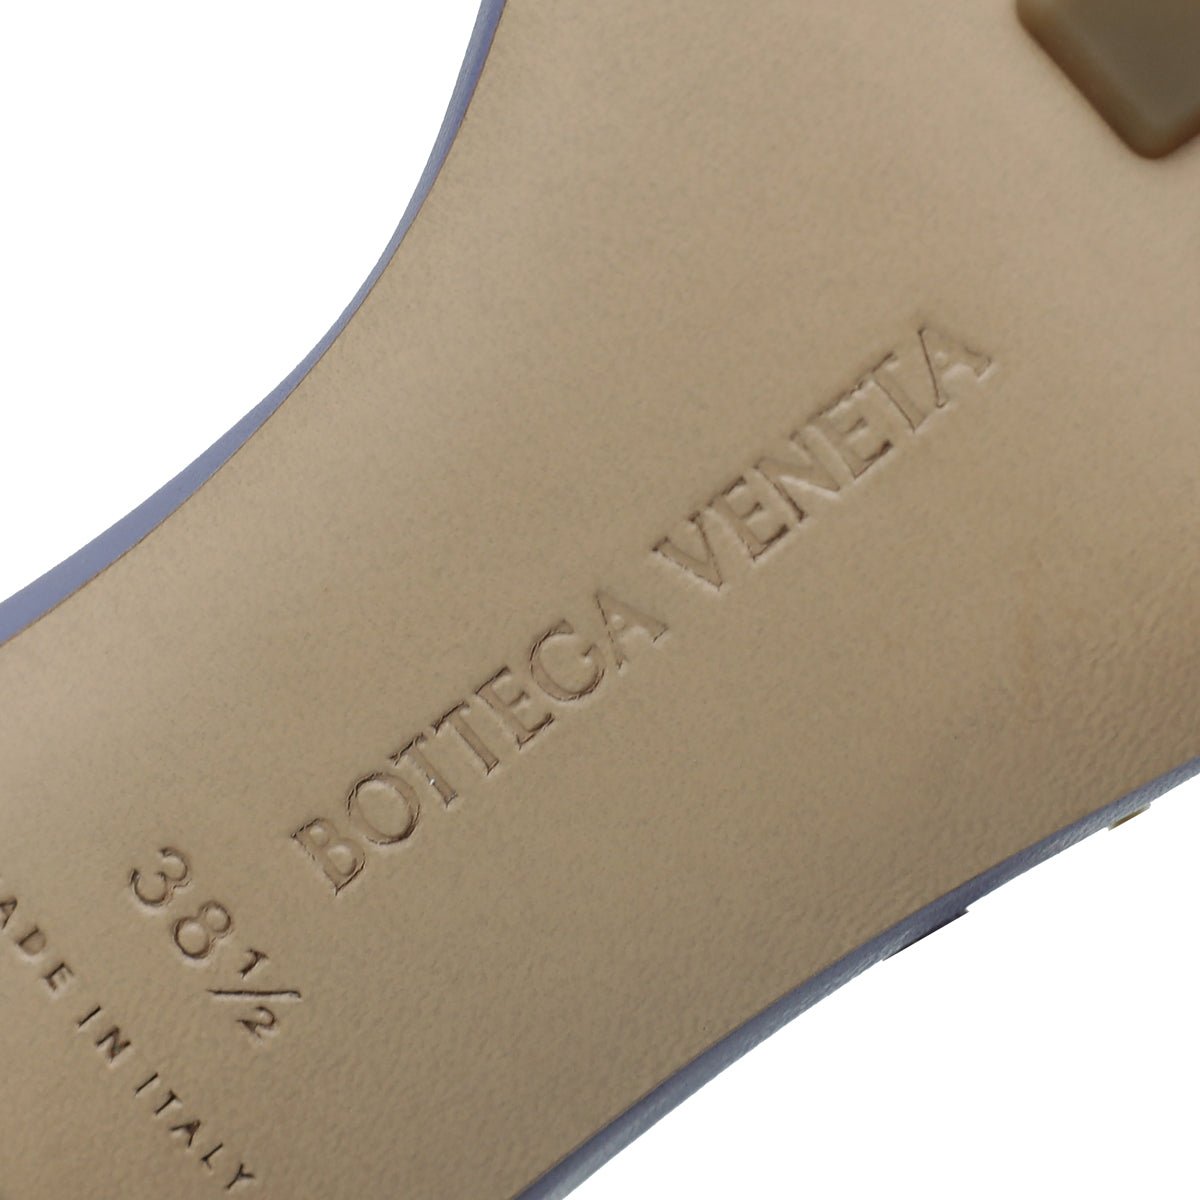 Bottega Veneta - Bottega Veneta Mauve Nappa Stretch Chain Sandals 38.5 | The Closet